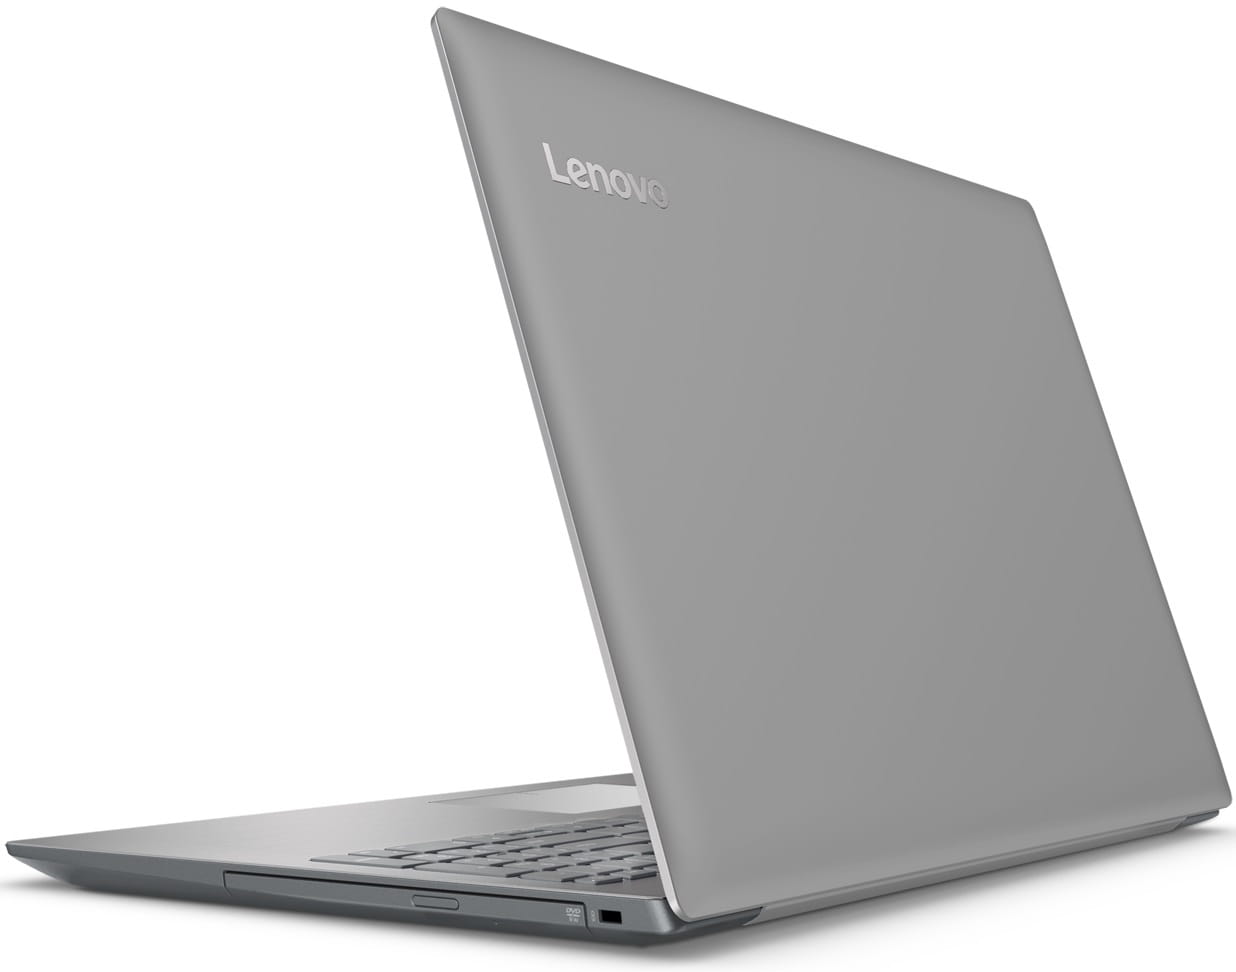 Laptop Lenovo IdeaPad 320-15IKB / 15.6" FullHD / i5-8250U / 8Gb DDR4 / 256GB SSD / Intel UHD 620 / Windows 10 64-bit / Grey